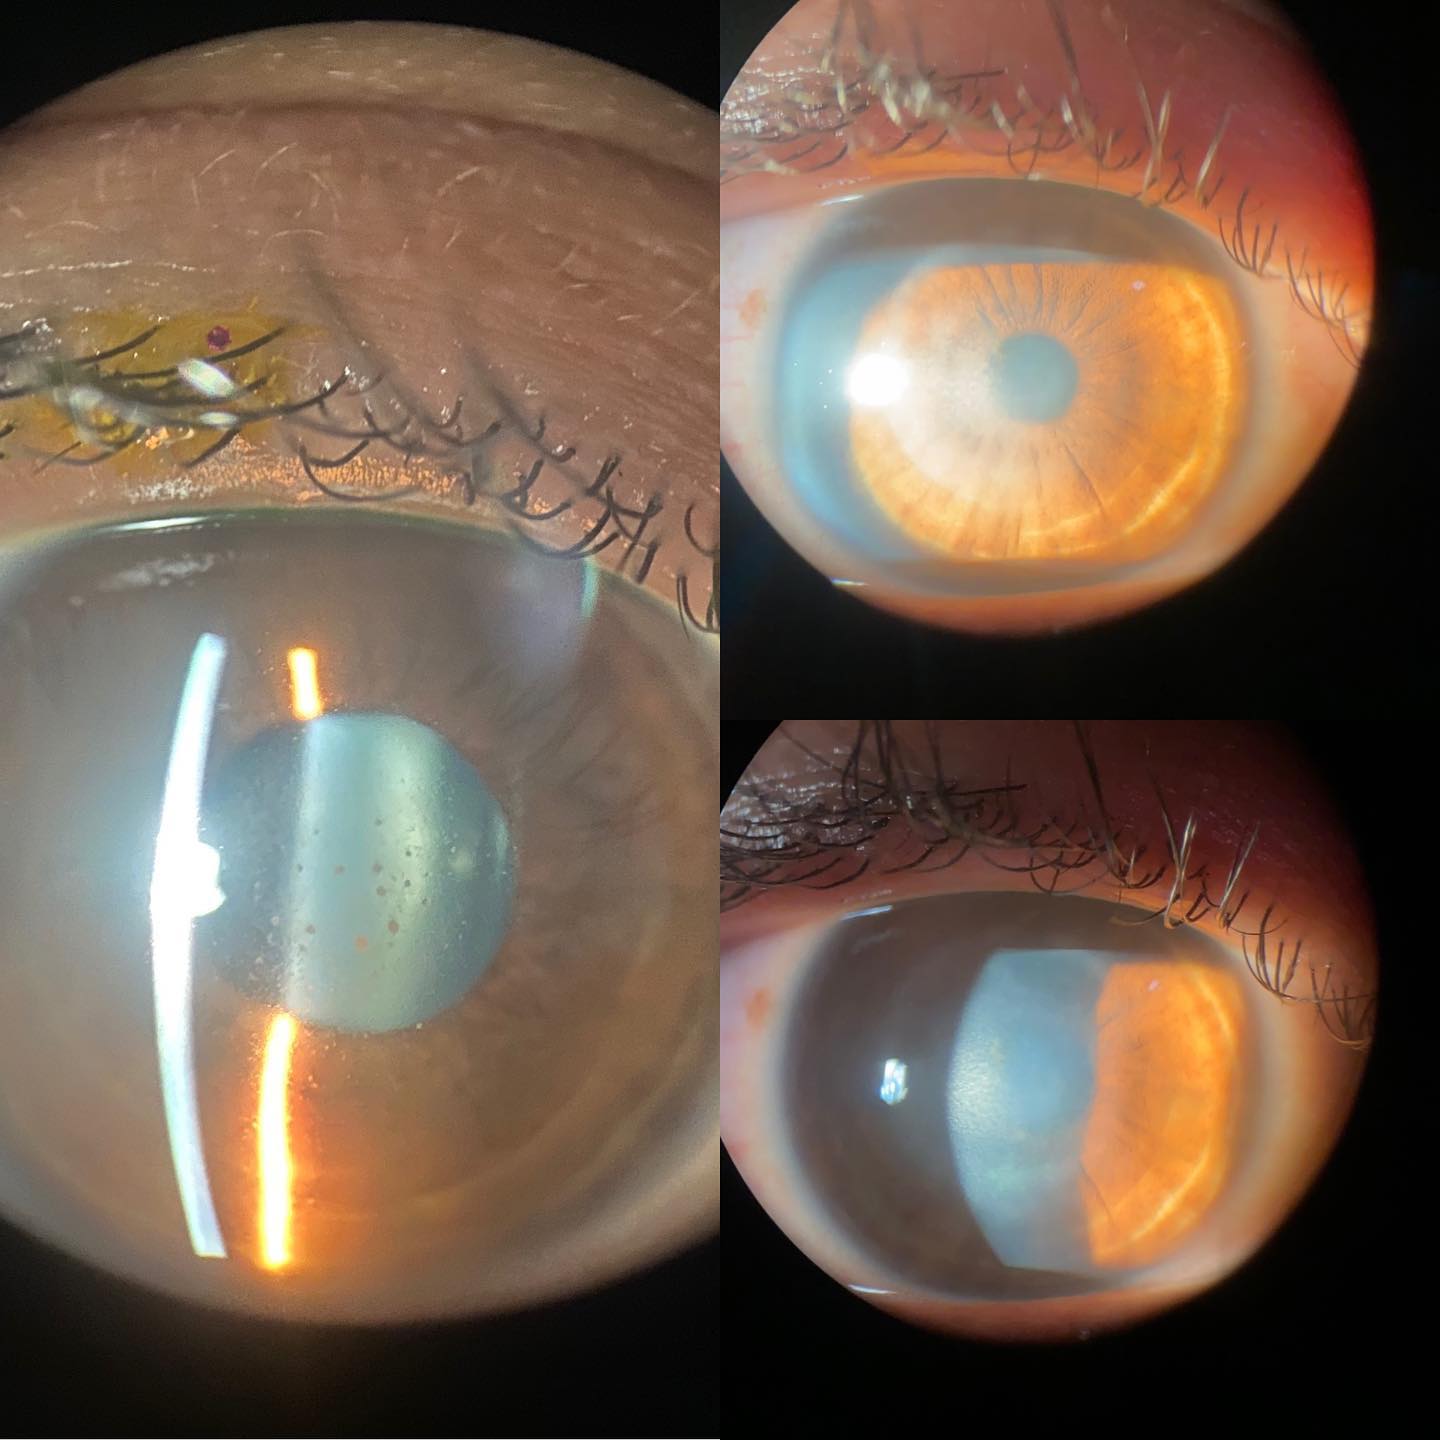 queratouveitis herpetica y leucona residual Ojo humano / fotografía de ojos / cuidar los ojos